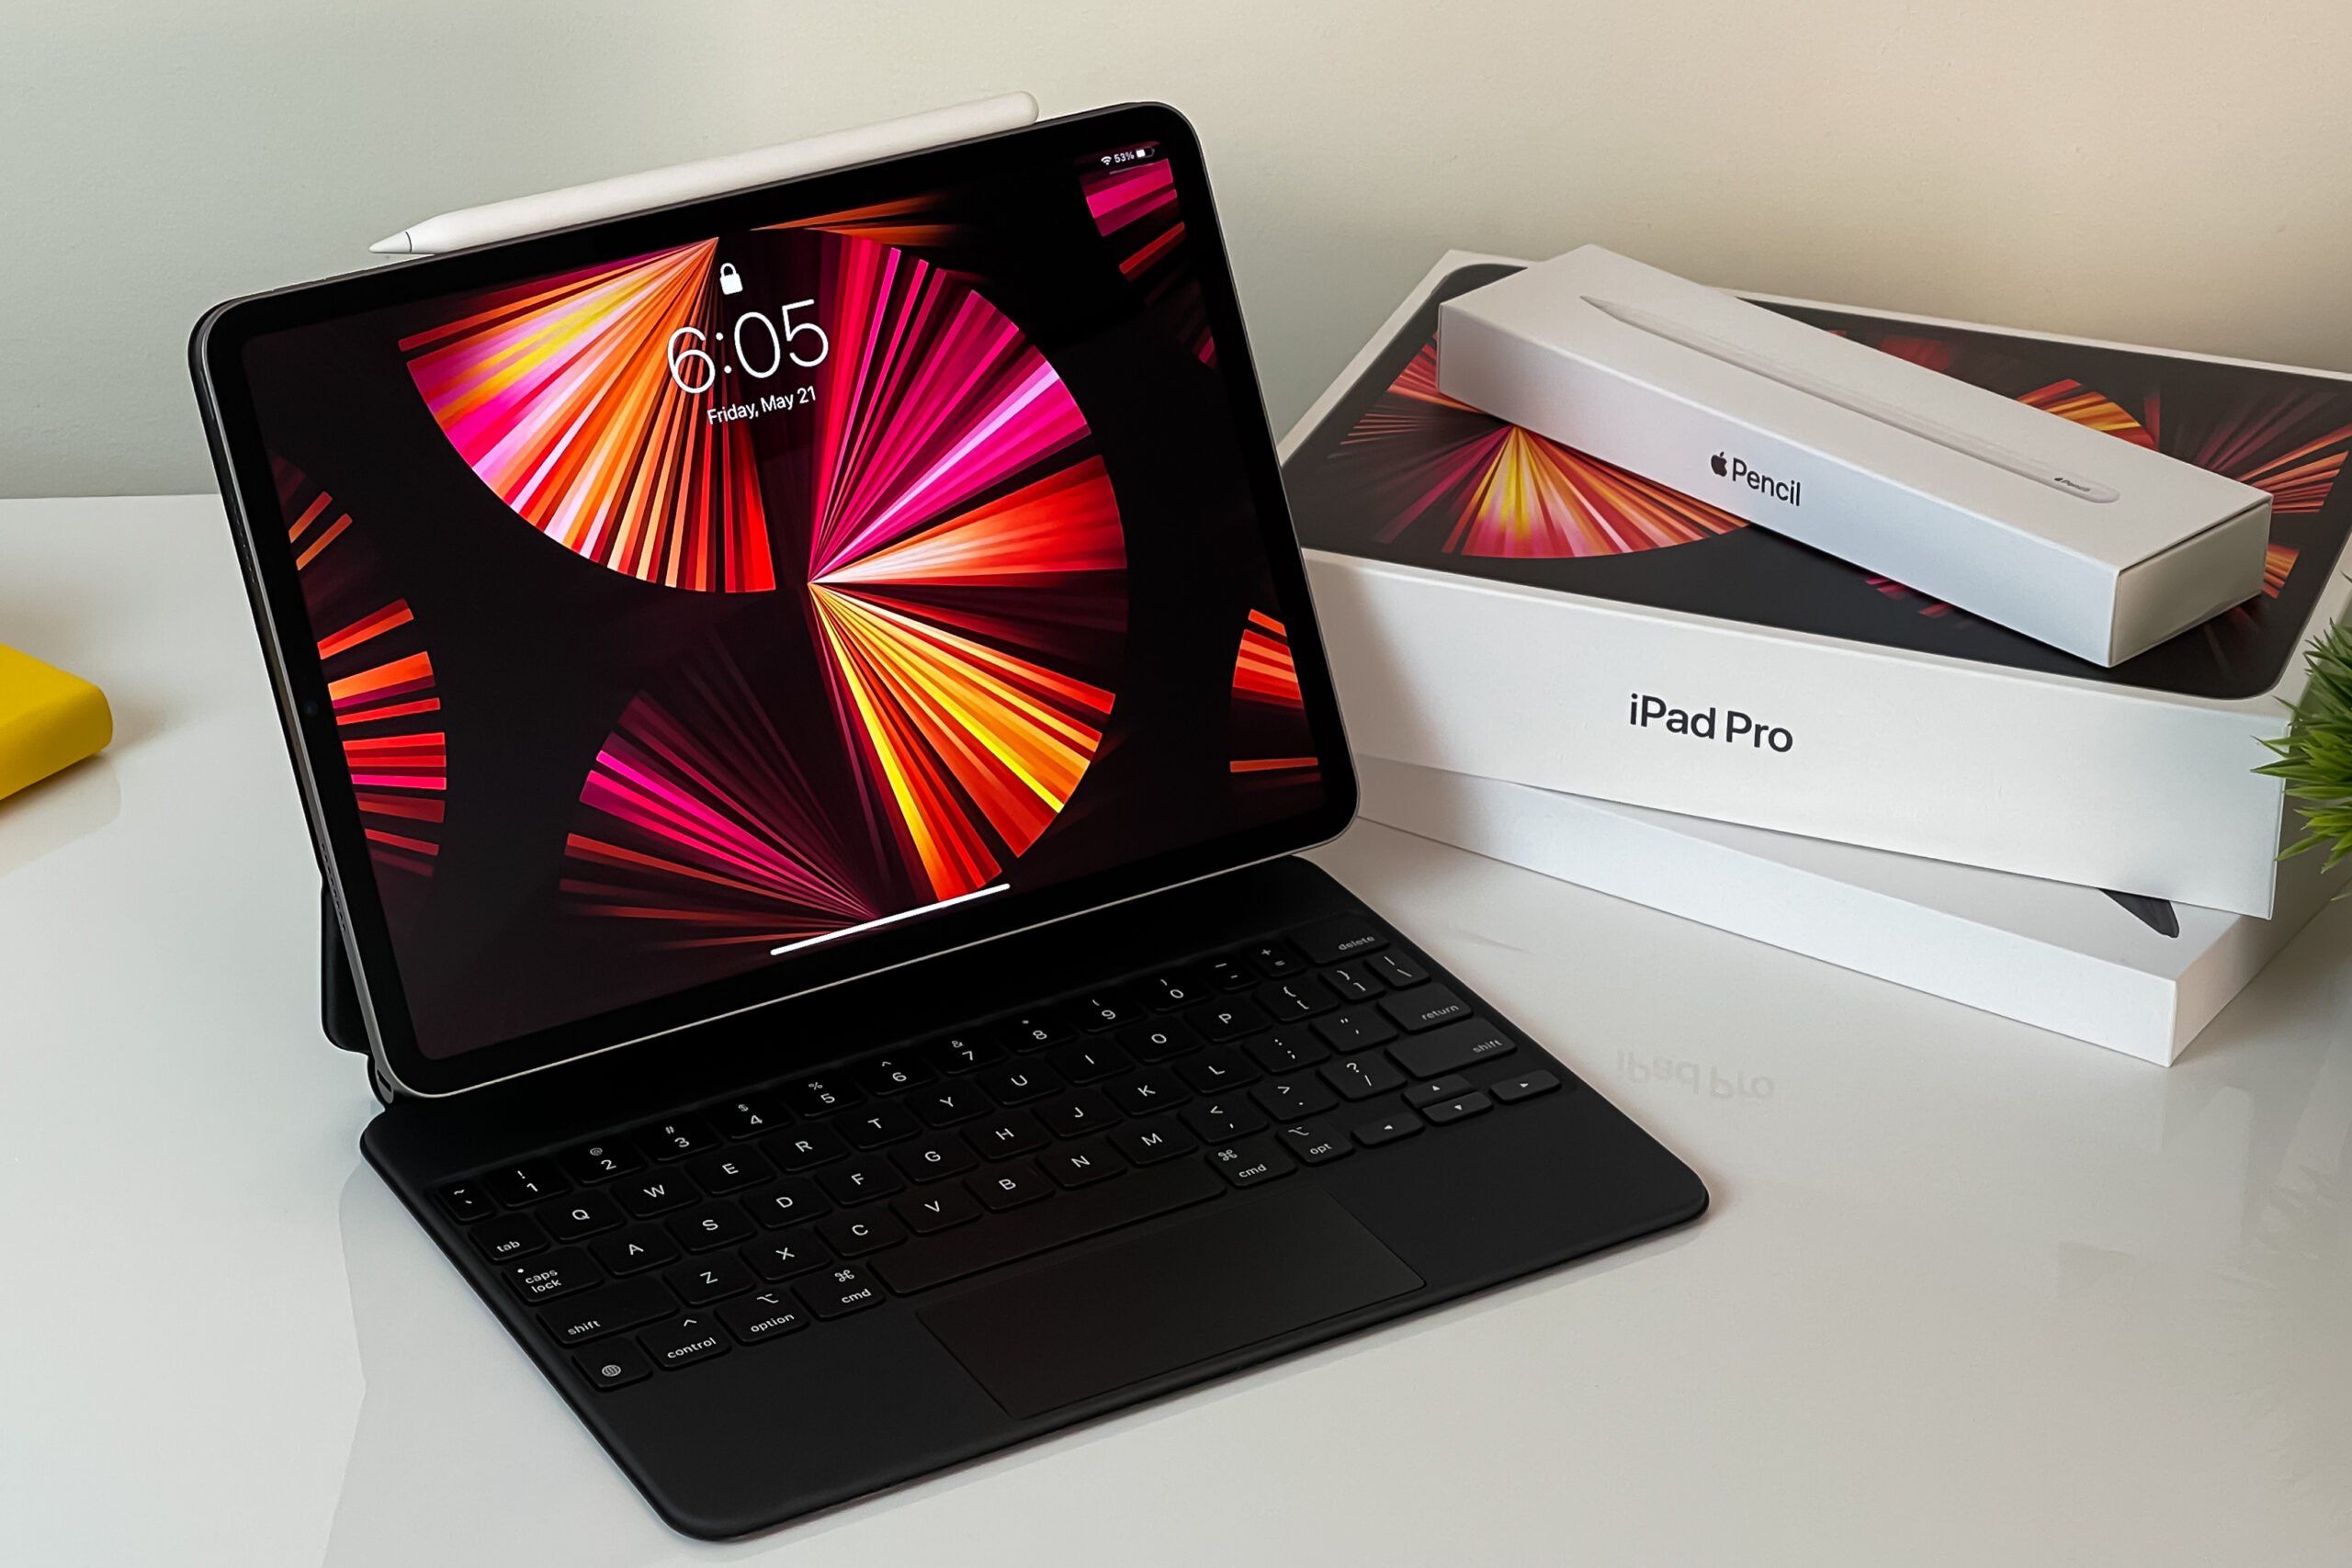 iPad Pro z klawiaturą na białym stole obok opakowań z iPencil i kartonem produktu.